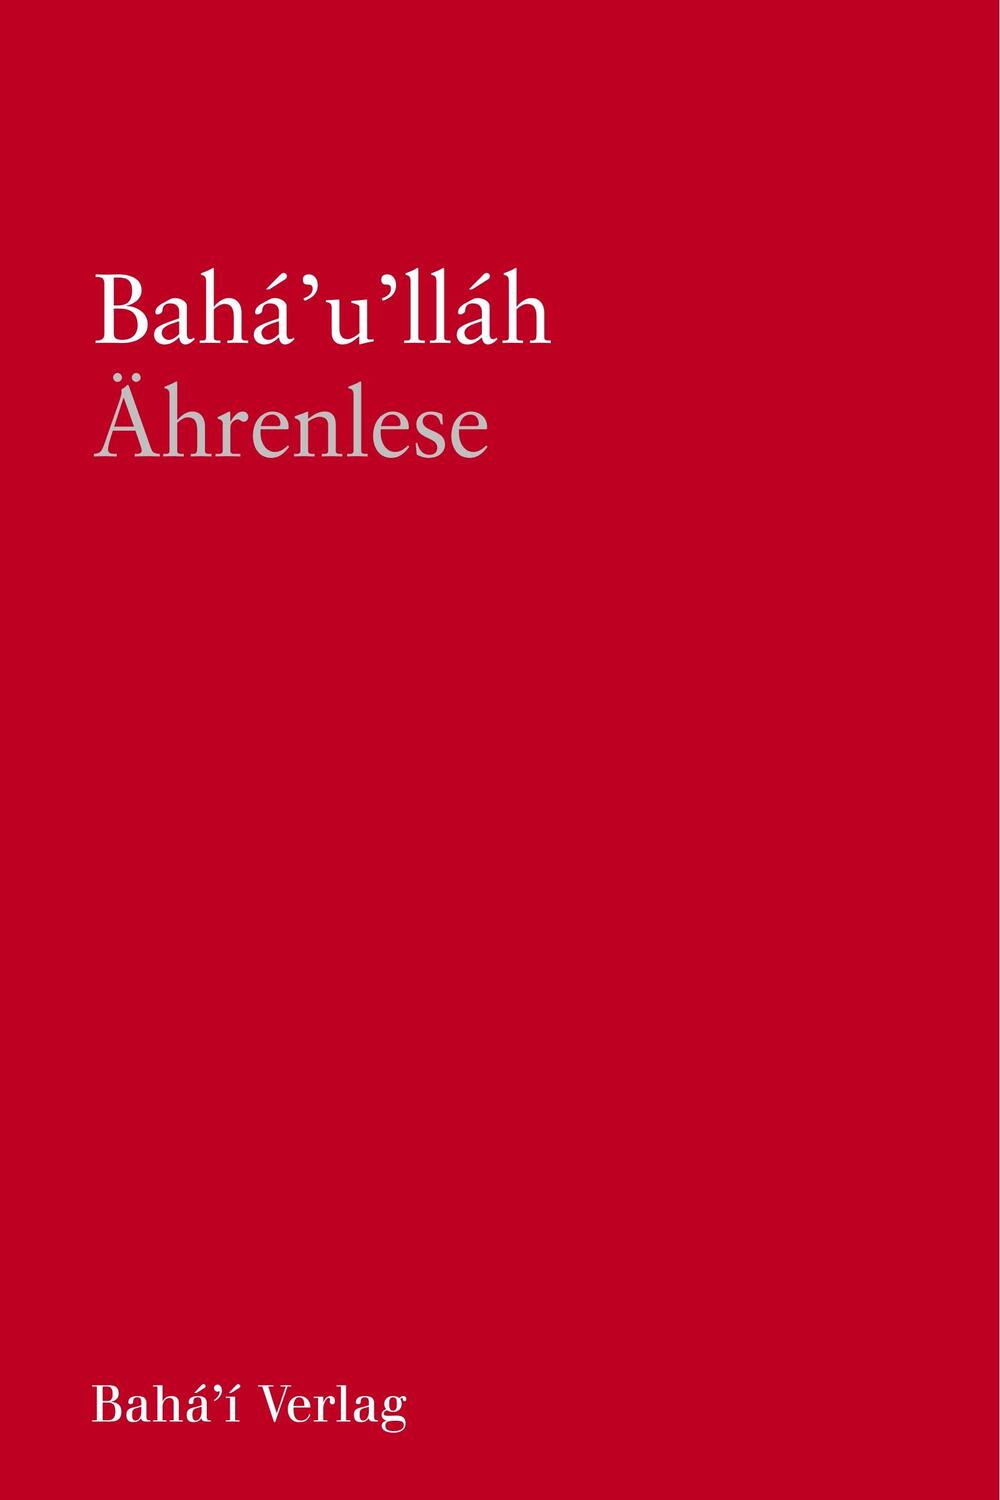 Ährenlese, SC - Bahá'u'lláh